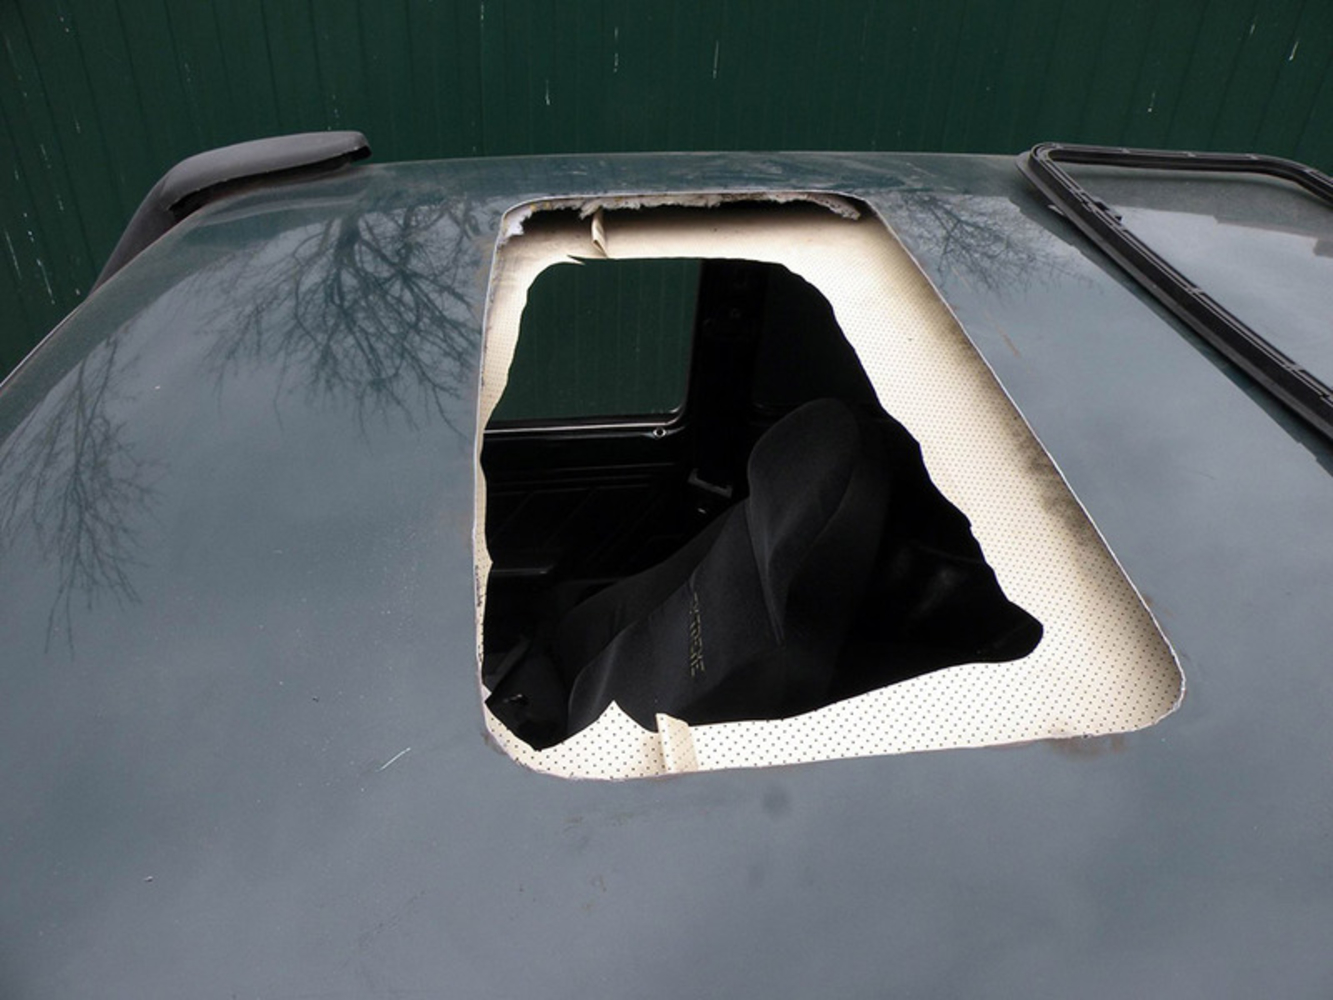 Как установить люк на крышу автомобиля: «Прокачать» машину? Можно, если ГИБДД разрешит — журнал За рулем